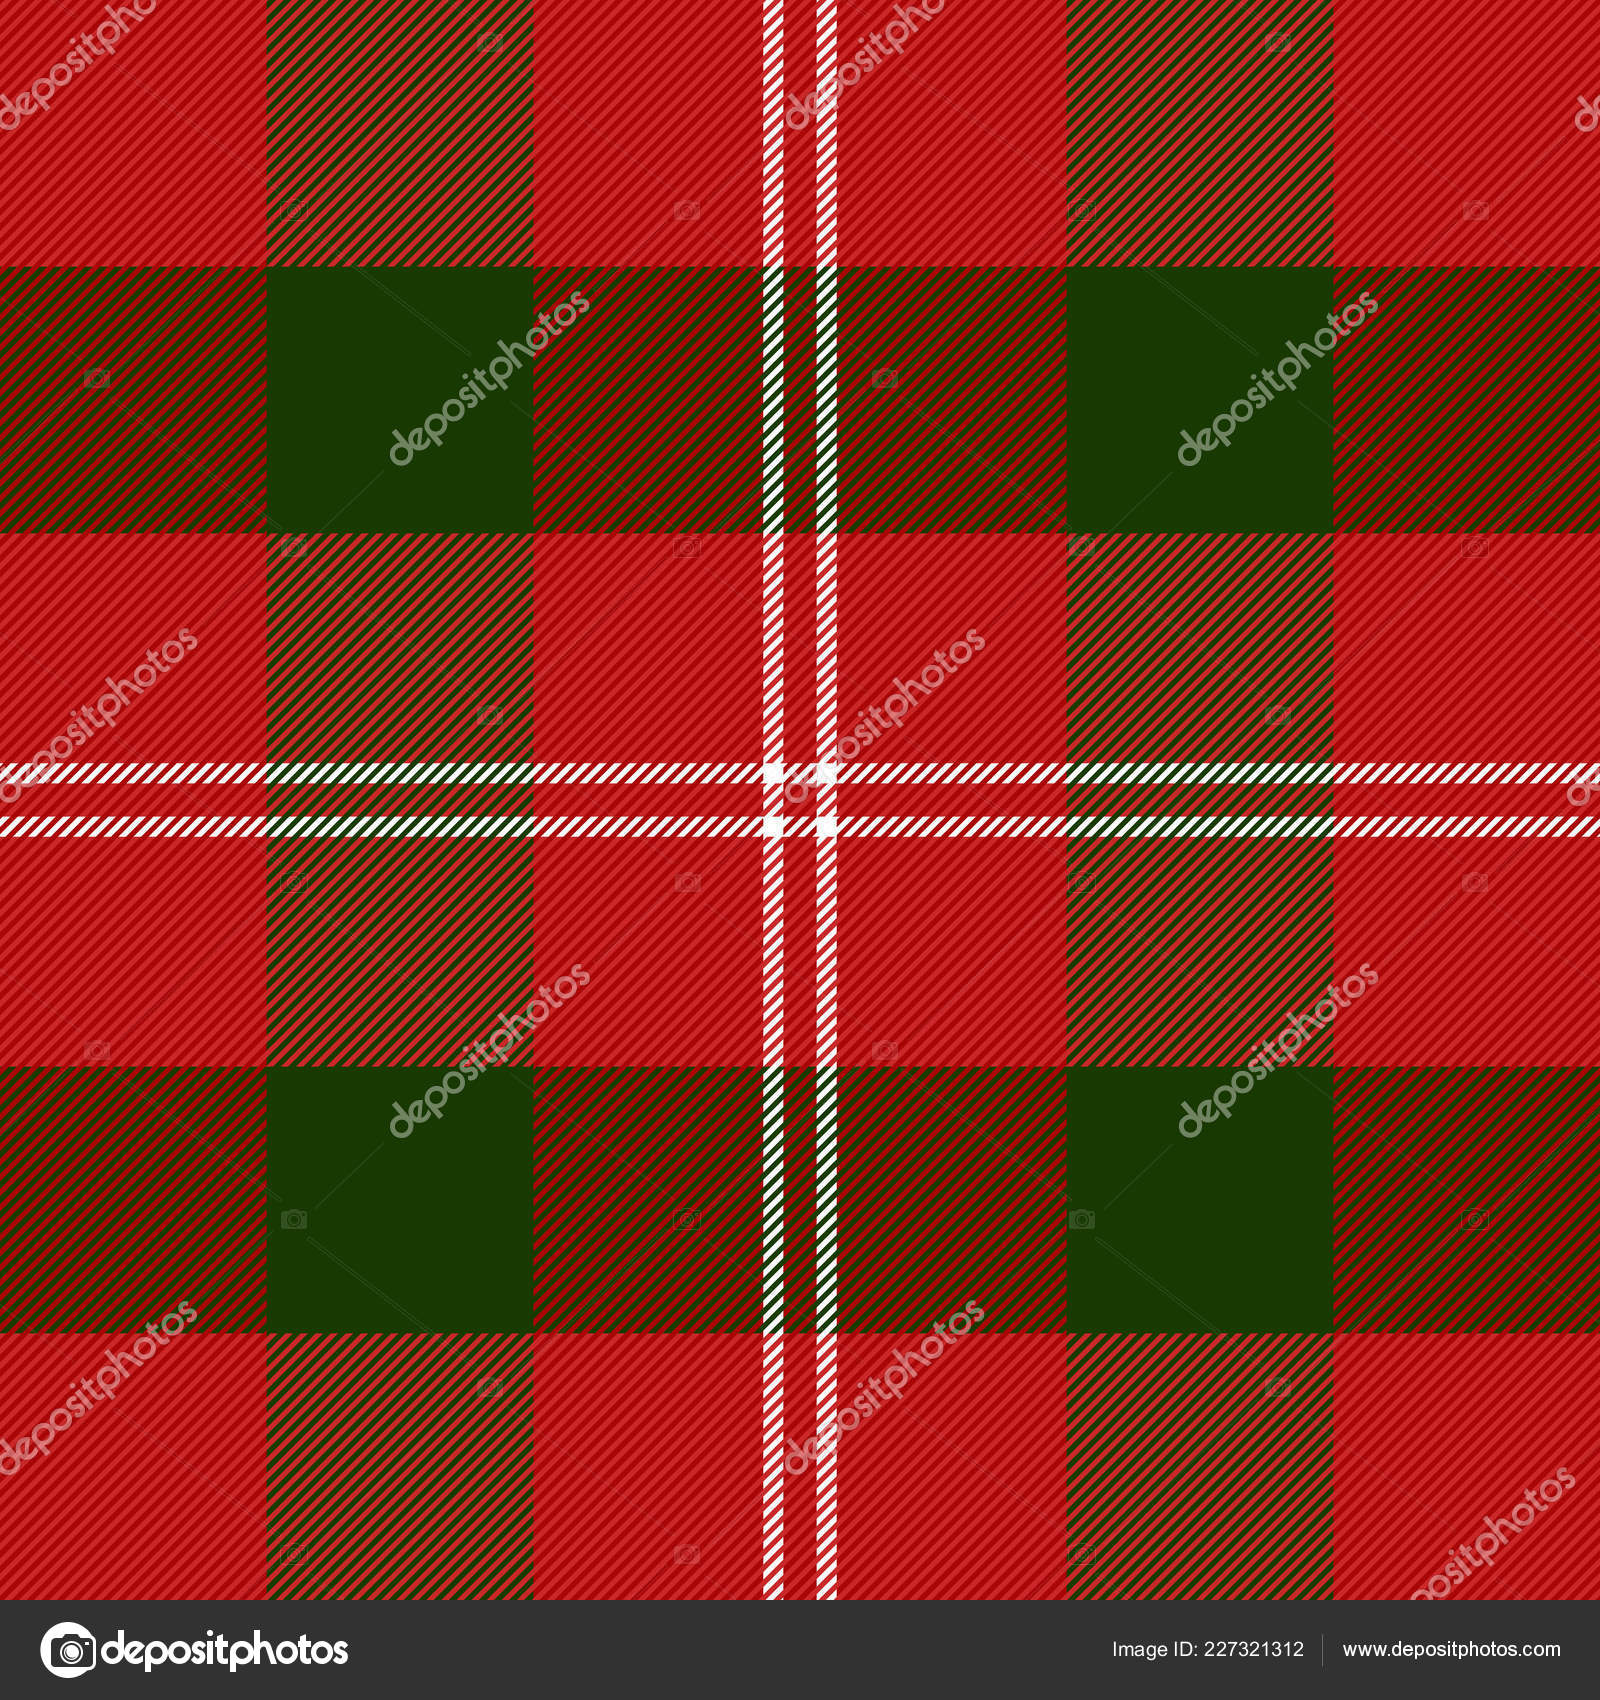 Preto e vermelho quadriculado fundo imagem vetorial de Mityay_PG